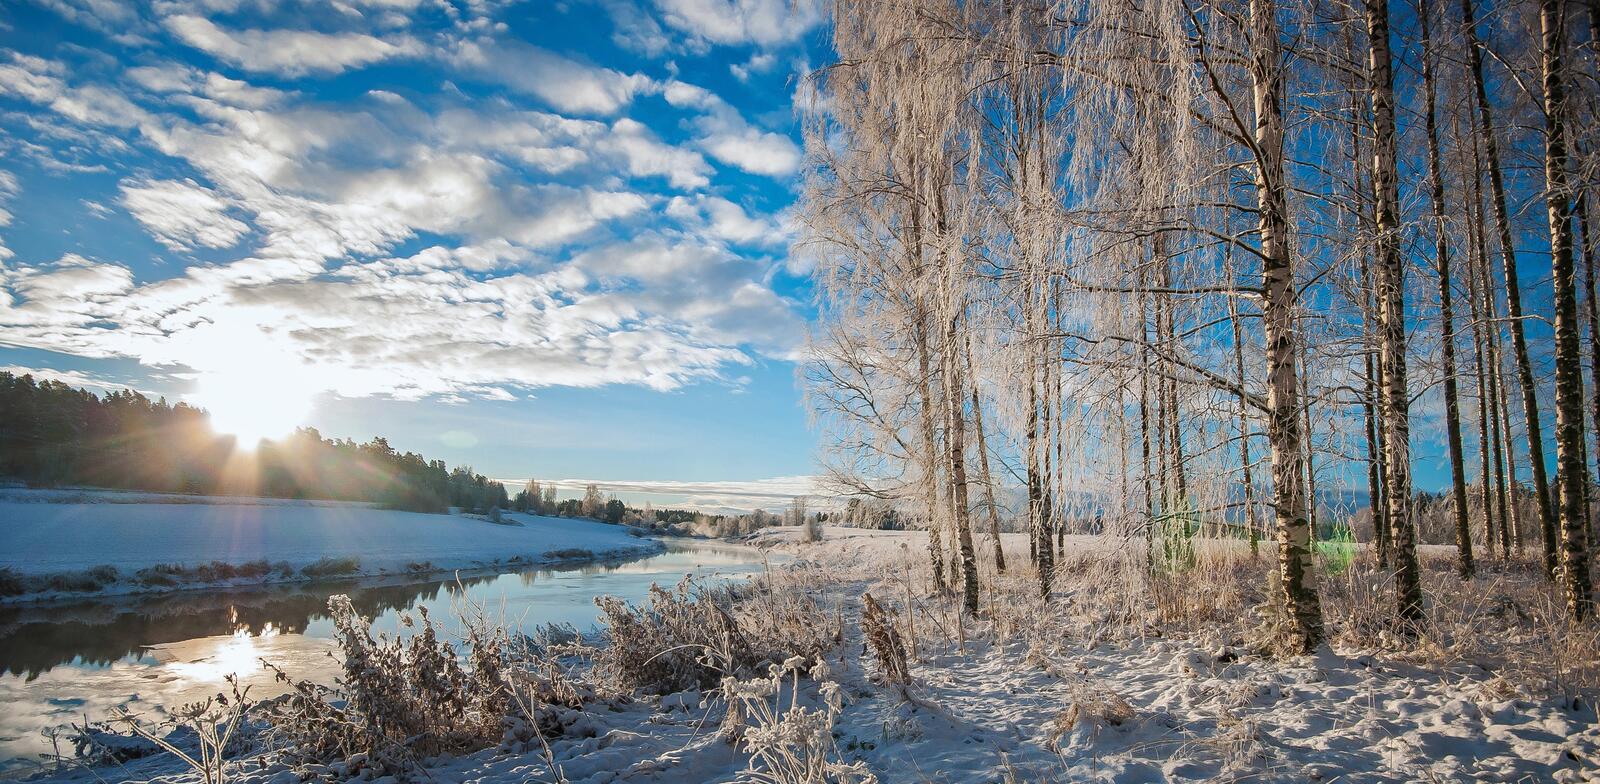 Бесплатное фото Финляндия - зимняя панорама